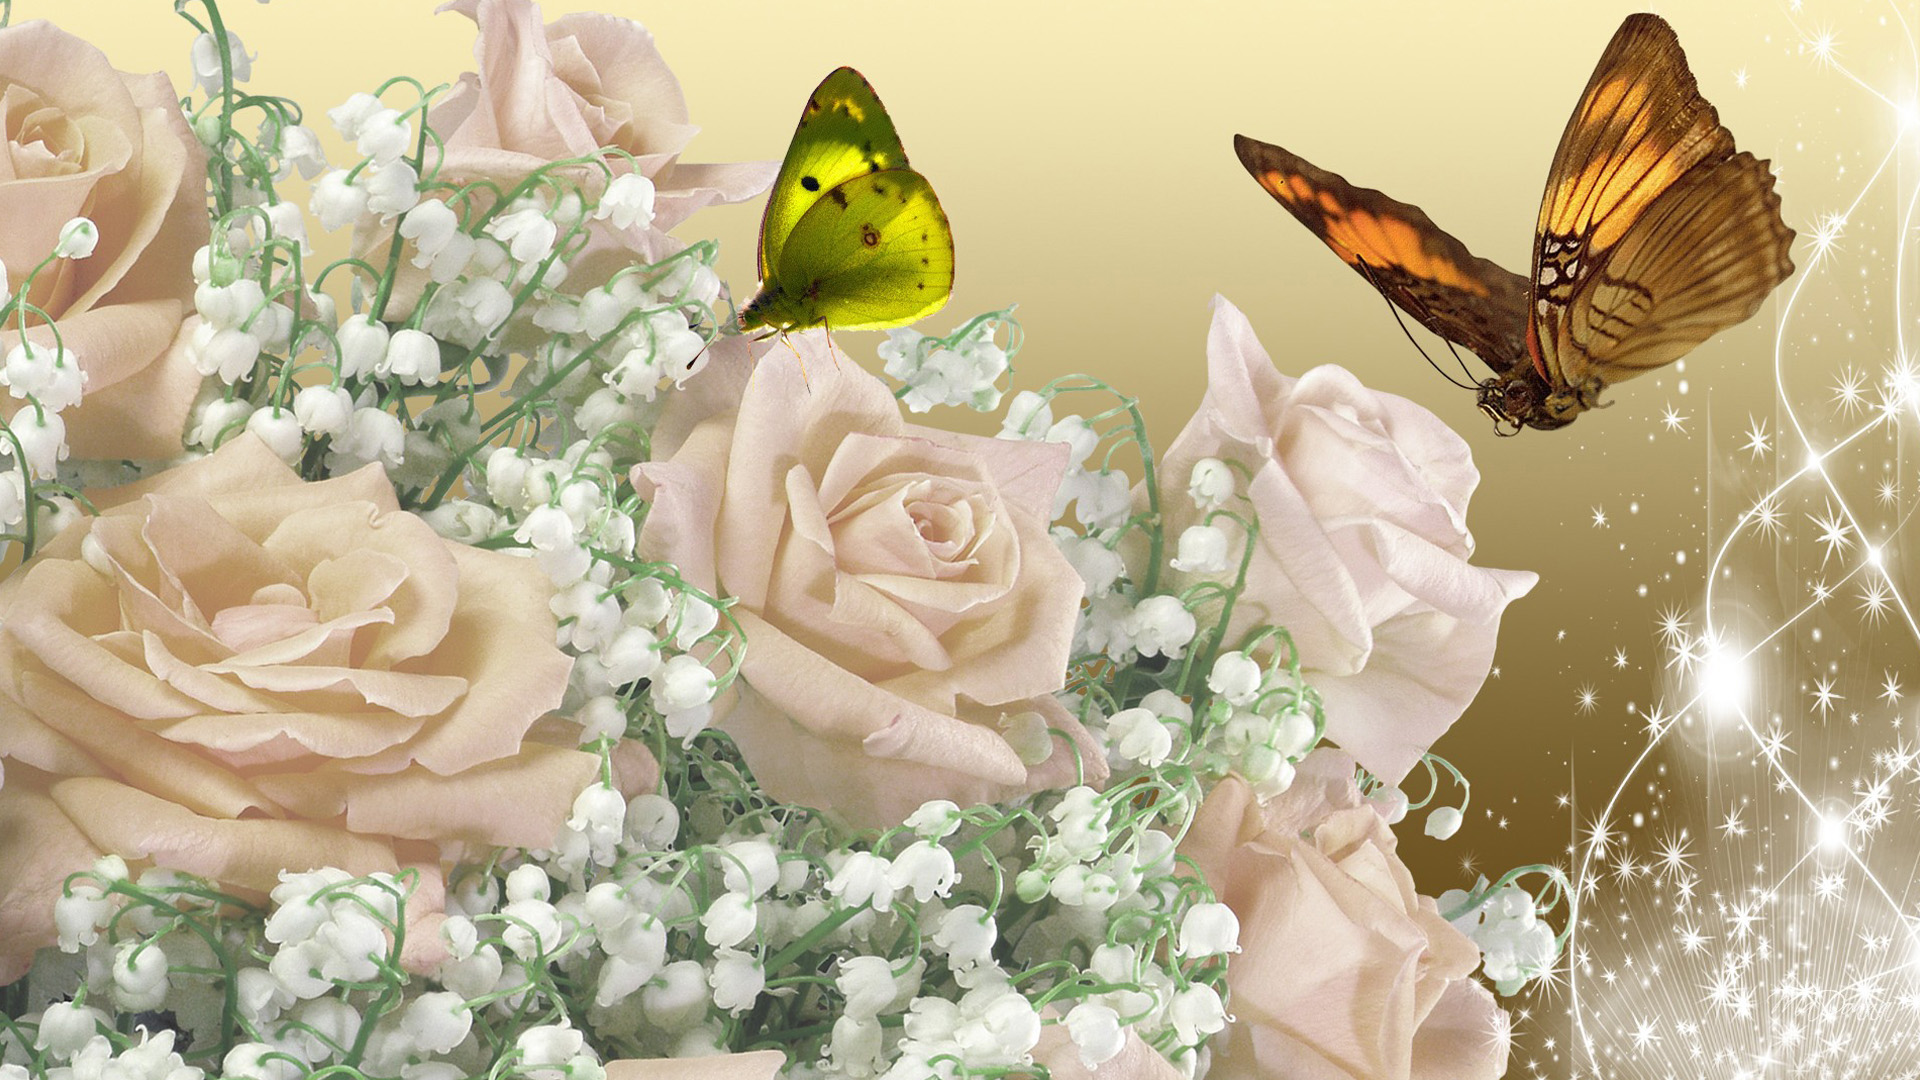 Beautiful 3d roses wallpaper download | Rose wallpaper - Geegle News